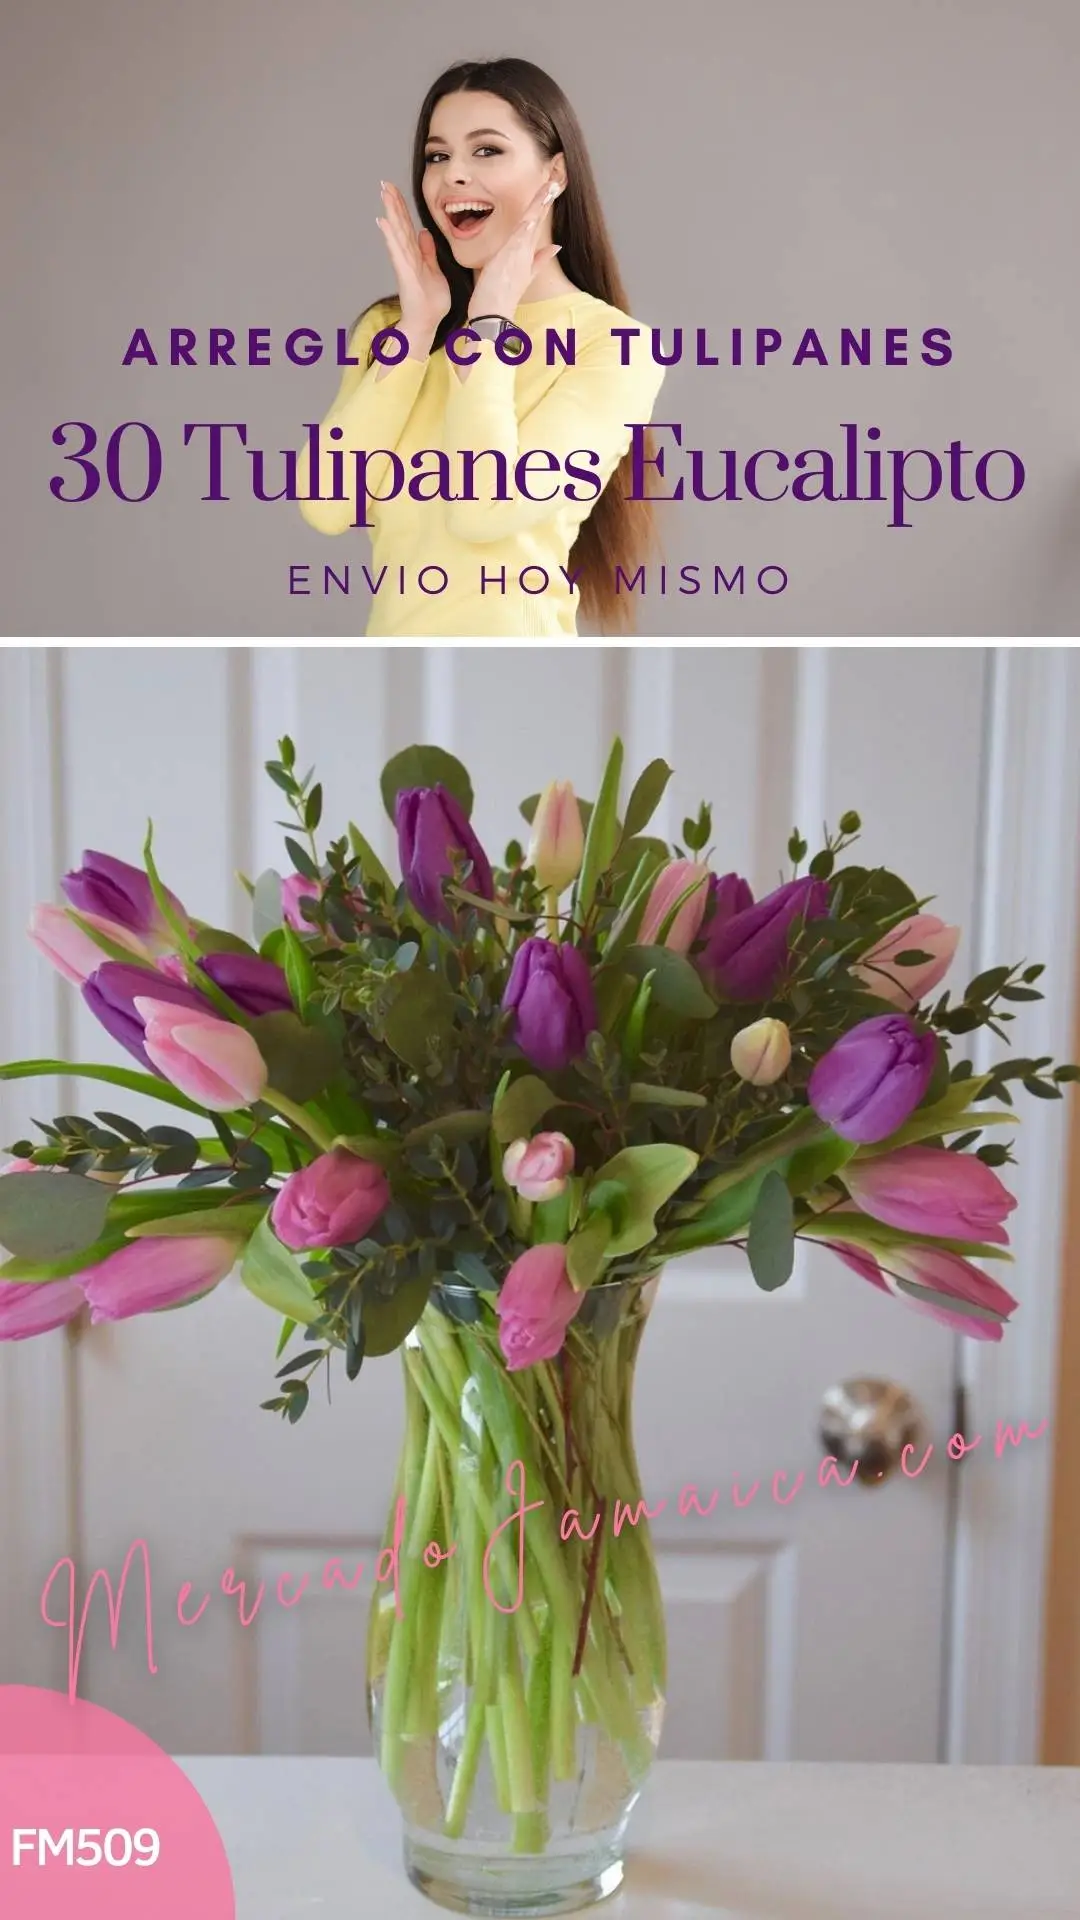 Arreglo con 30 tulipanes eucalipto